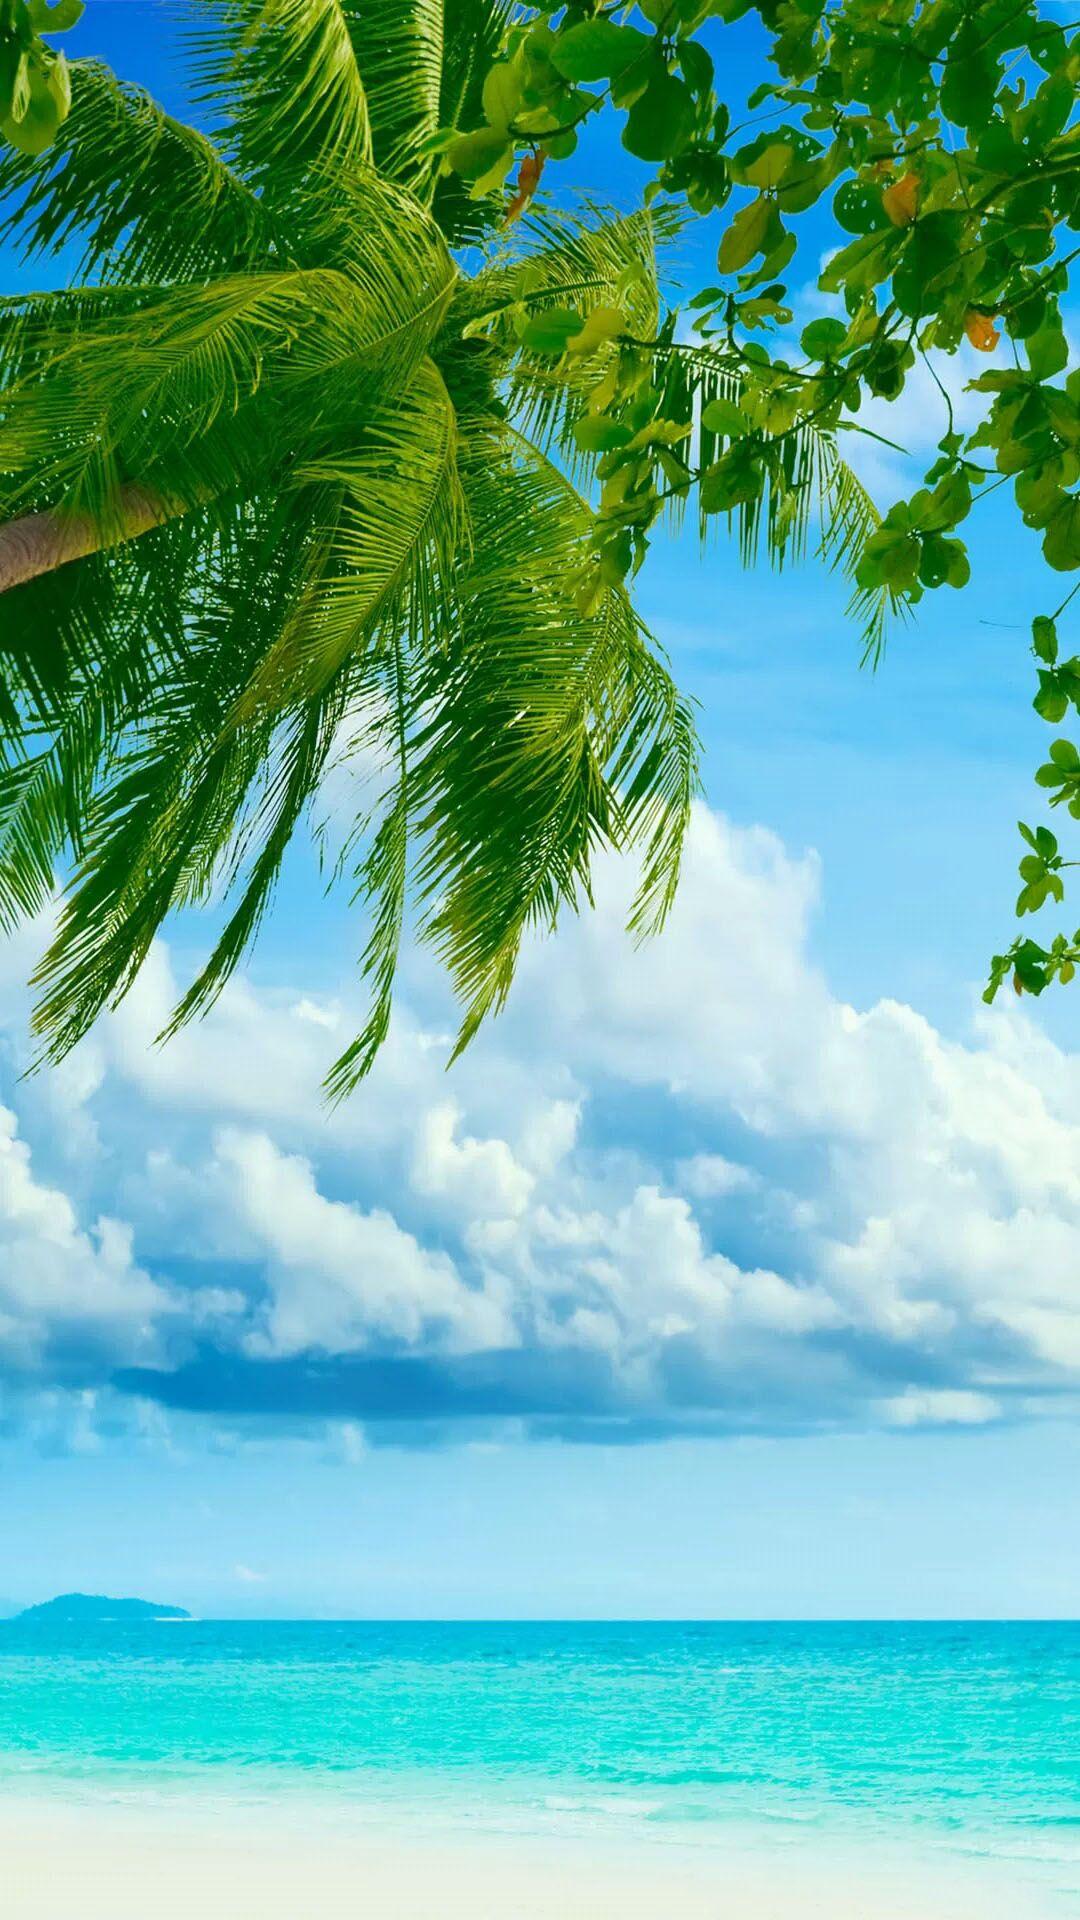 Hình ảnh đẹp về cây dừa với biển